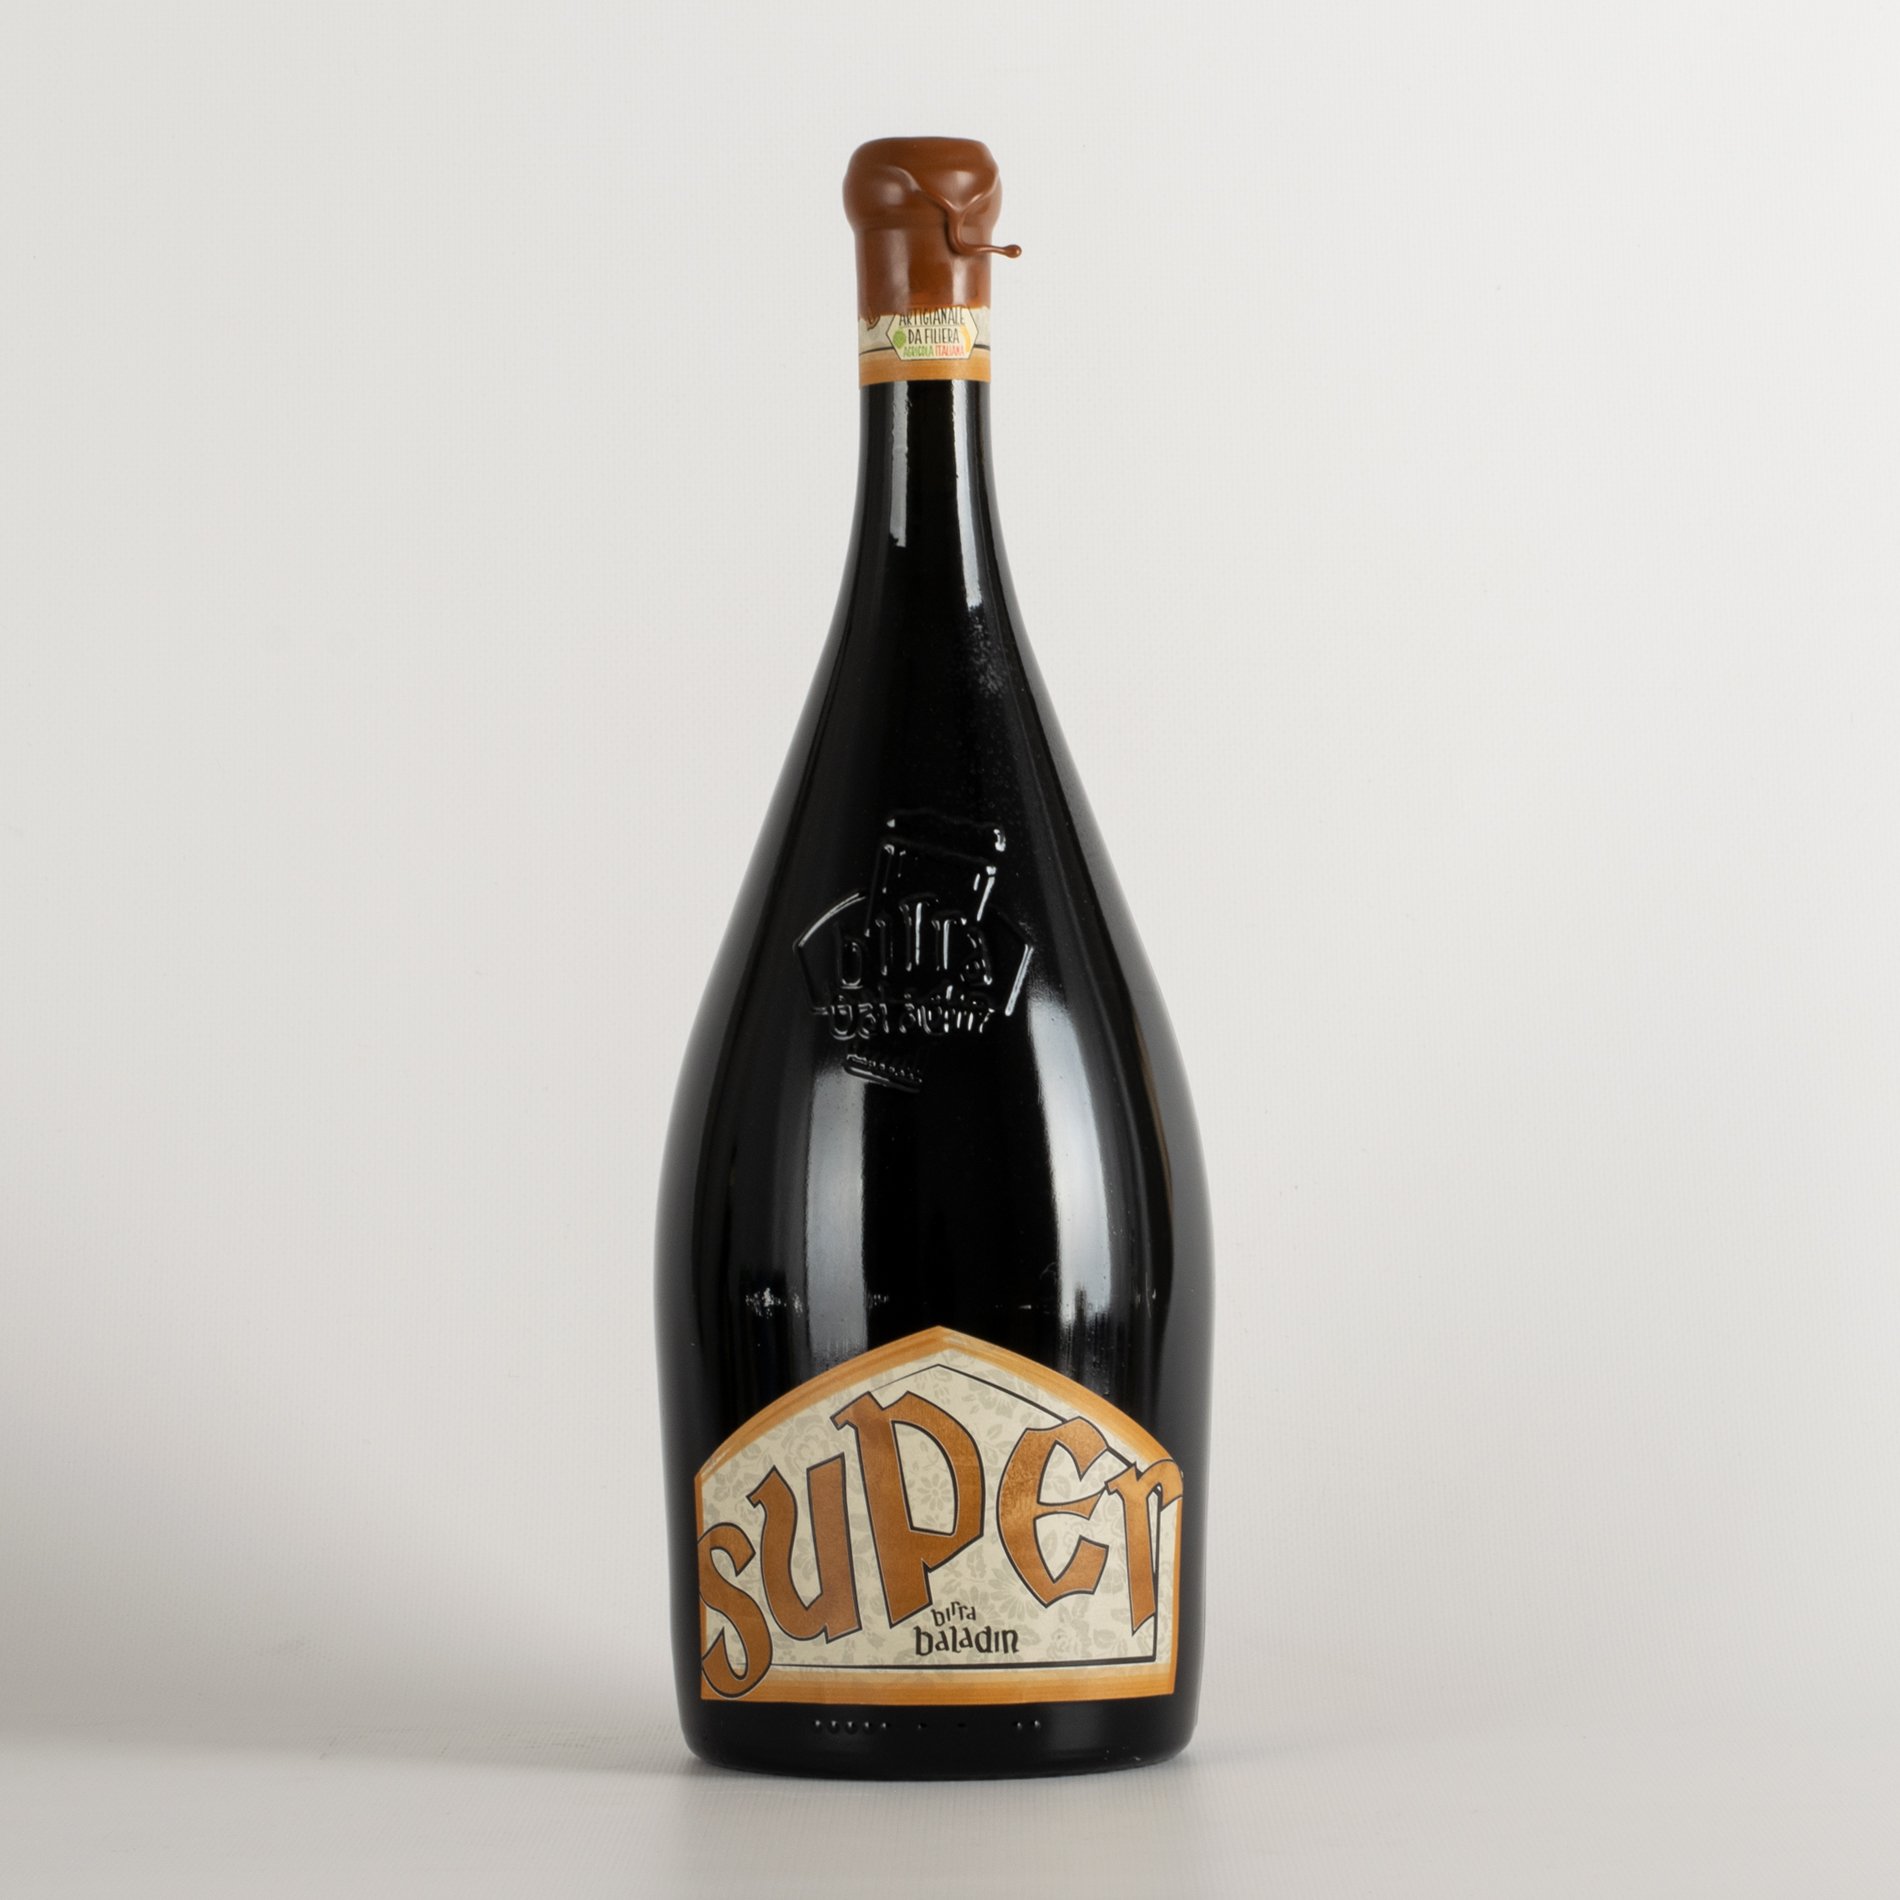 Super 150 cl - Baladin amber beer